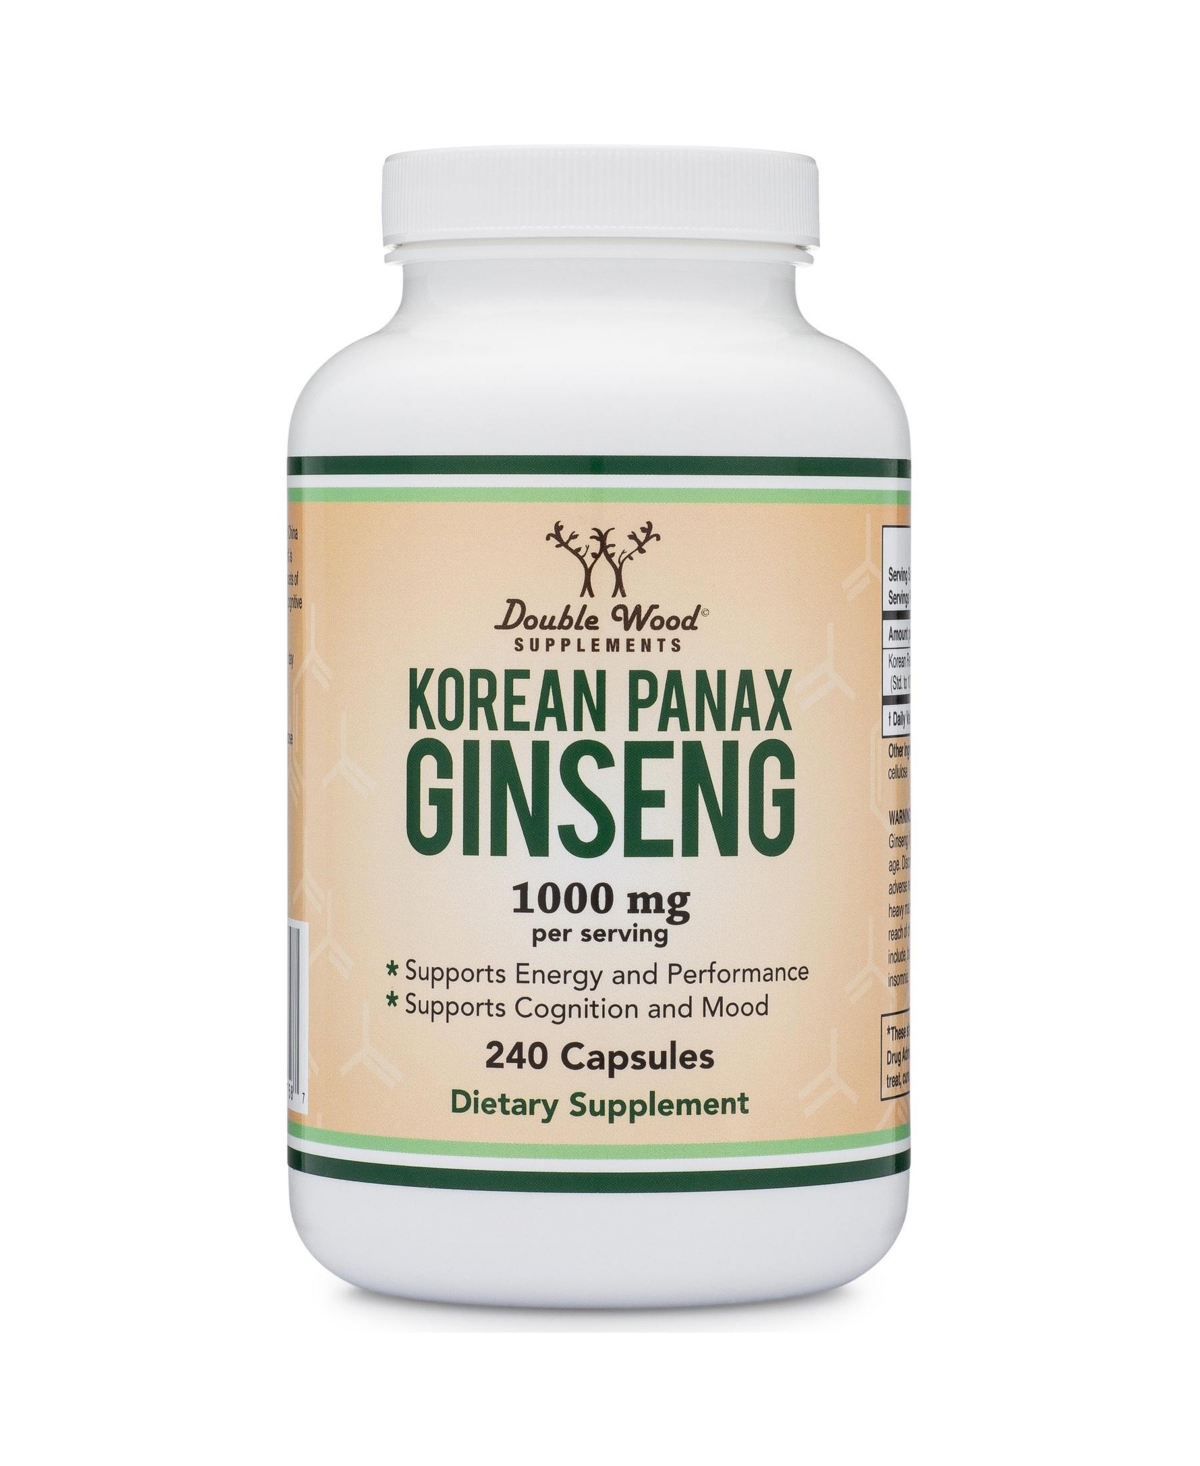 Korean Panax Ginseng - 240 capsules, 1000 mg servings